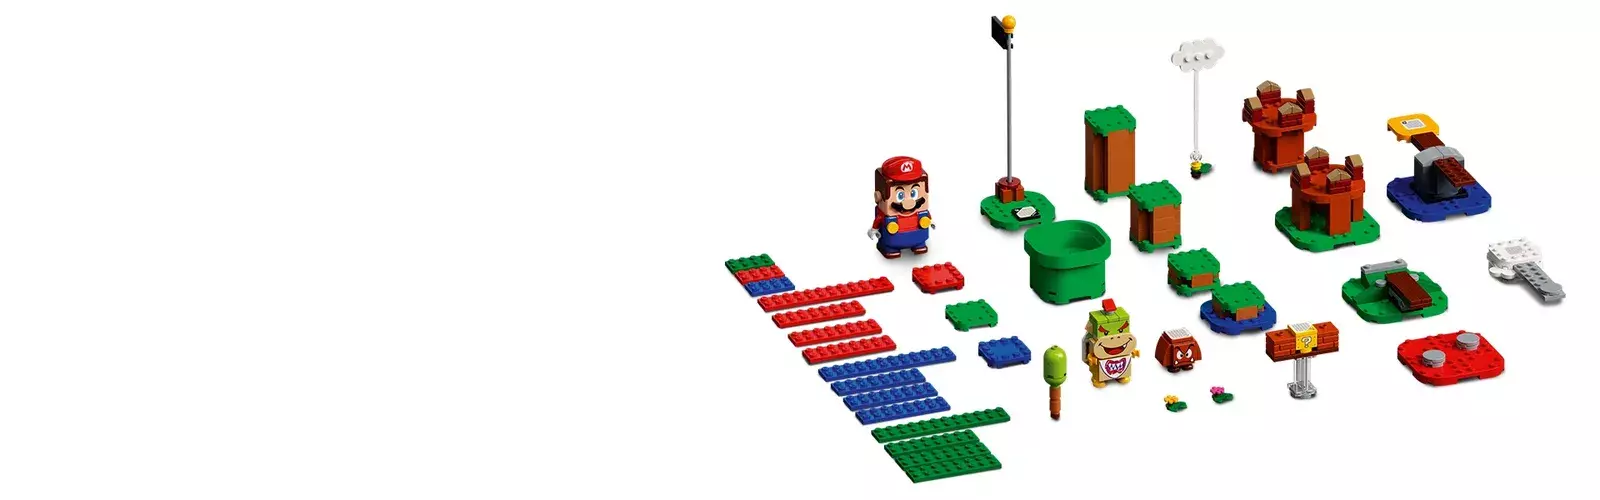 LEGO Super Mario Walka w zamku Bowsera - zestaw rozszerzający 71369